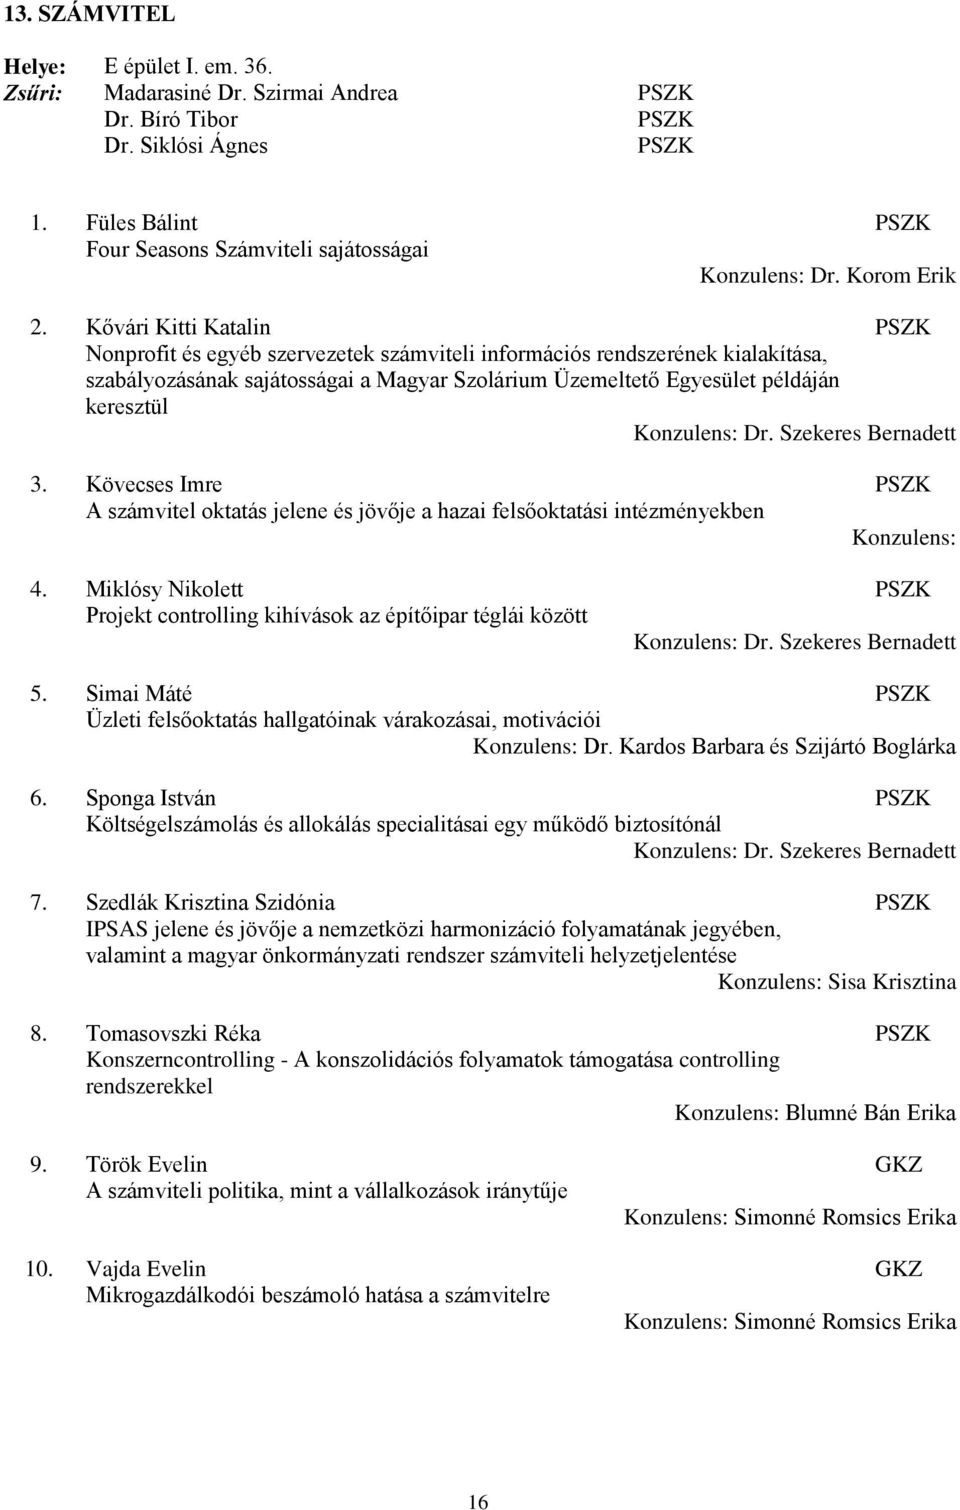 Kővári Kitti Katalin PSZK Nonprofit és egyéb szervezetek számviteli információs rendszerének kialakítása, szabályozásának sajátosságai a Magyar Szolárium Üzemeltető Egyesület példáján keresztül